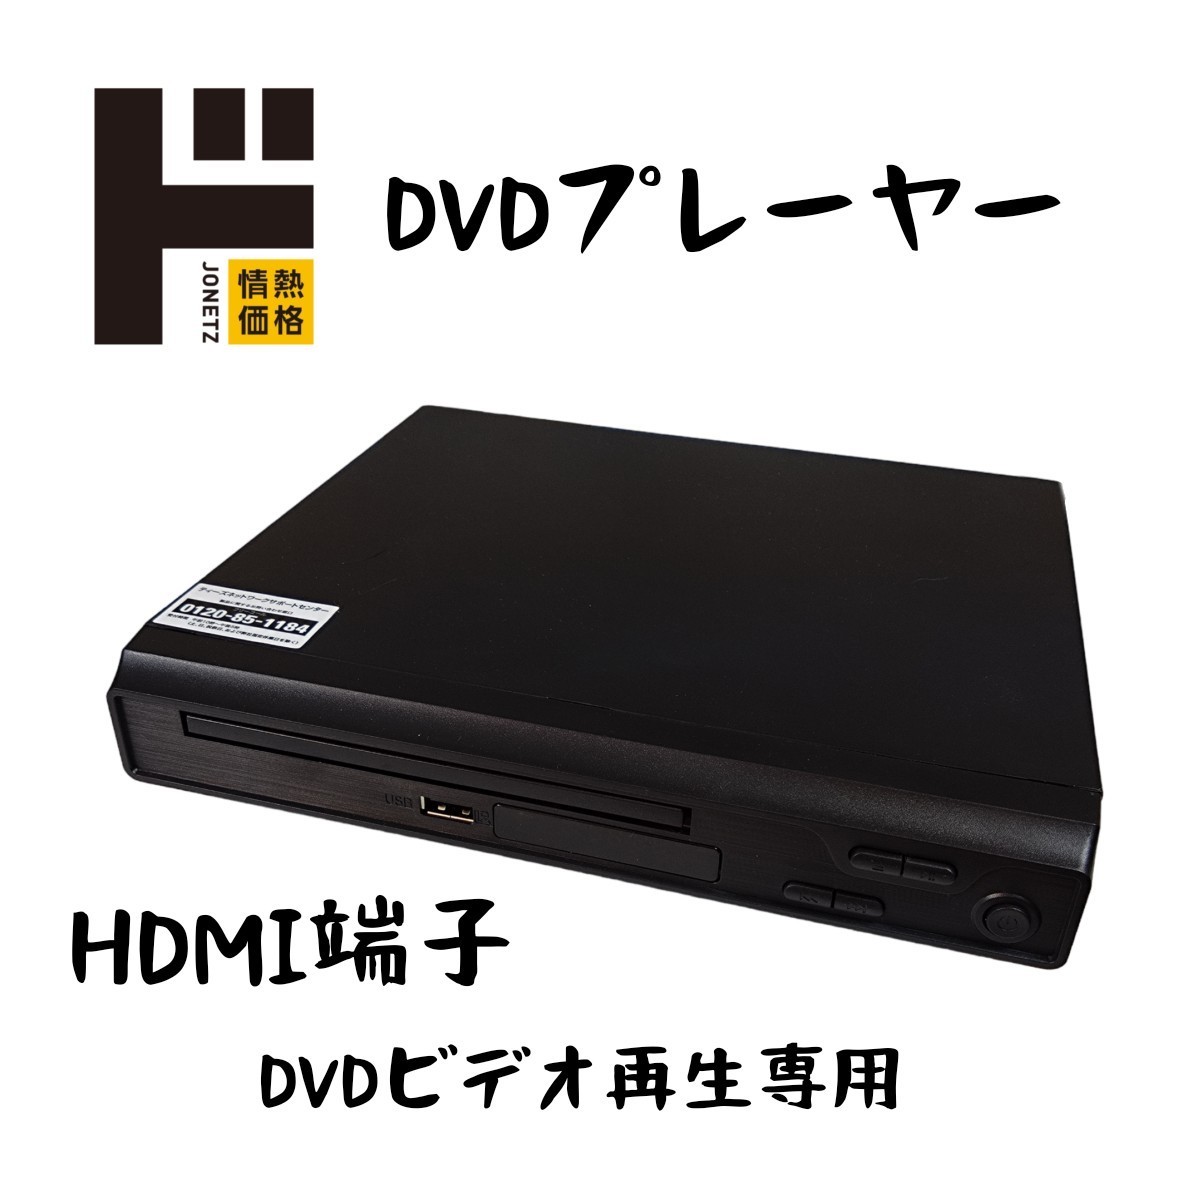 ドン・キホーテ 情熱価格 DVDプレーヤー HDMI端子DVD DVD VIDEO再生専用 音楽再生 静止画表示（リモコン、HDMIケーブルなし）no.1694の画像1